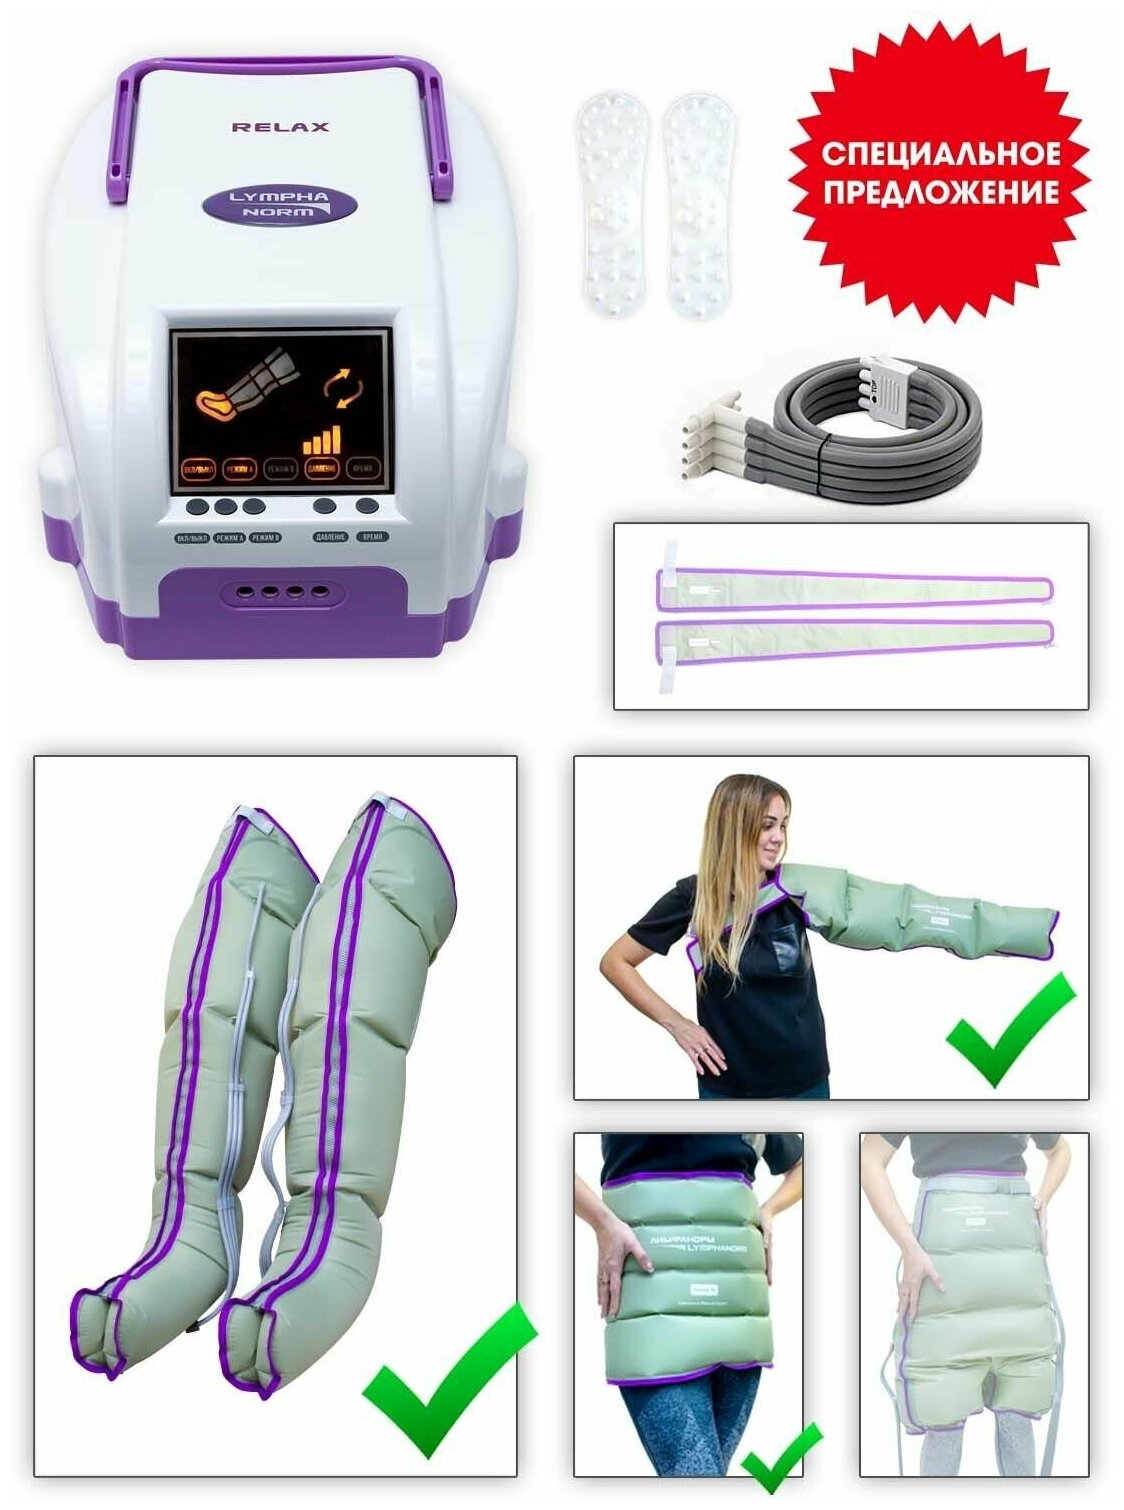 Аппарат для лимфодренажа и прессотерапии LymphaNorm RELAX. Комплект: манжеты на ногу (размер L) пояс (размер XXL) манжета для руки (82 см)